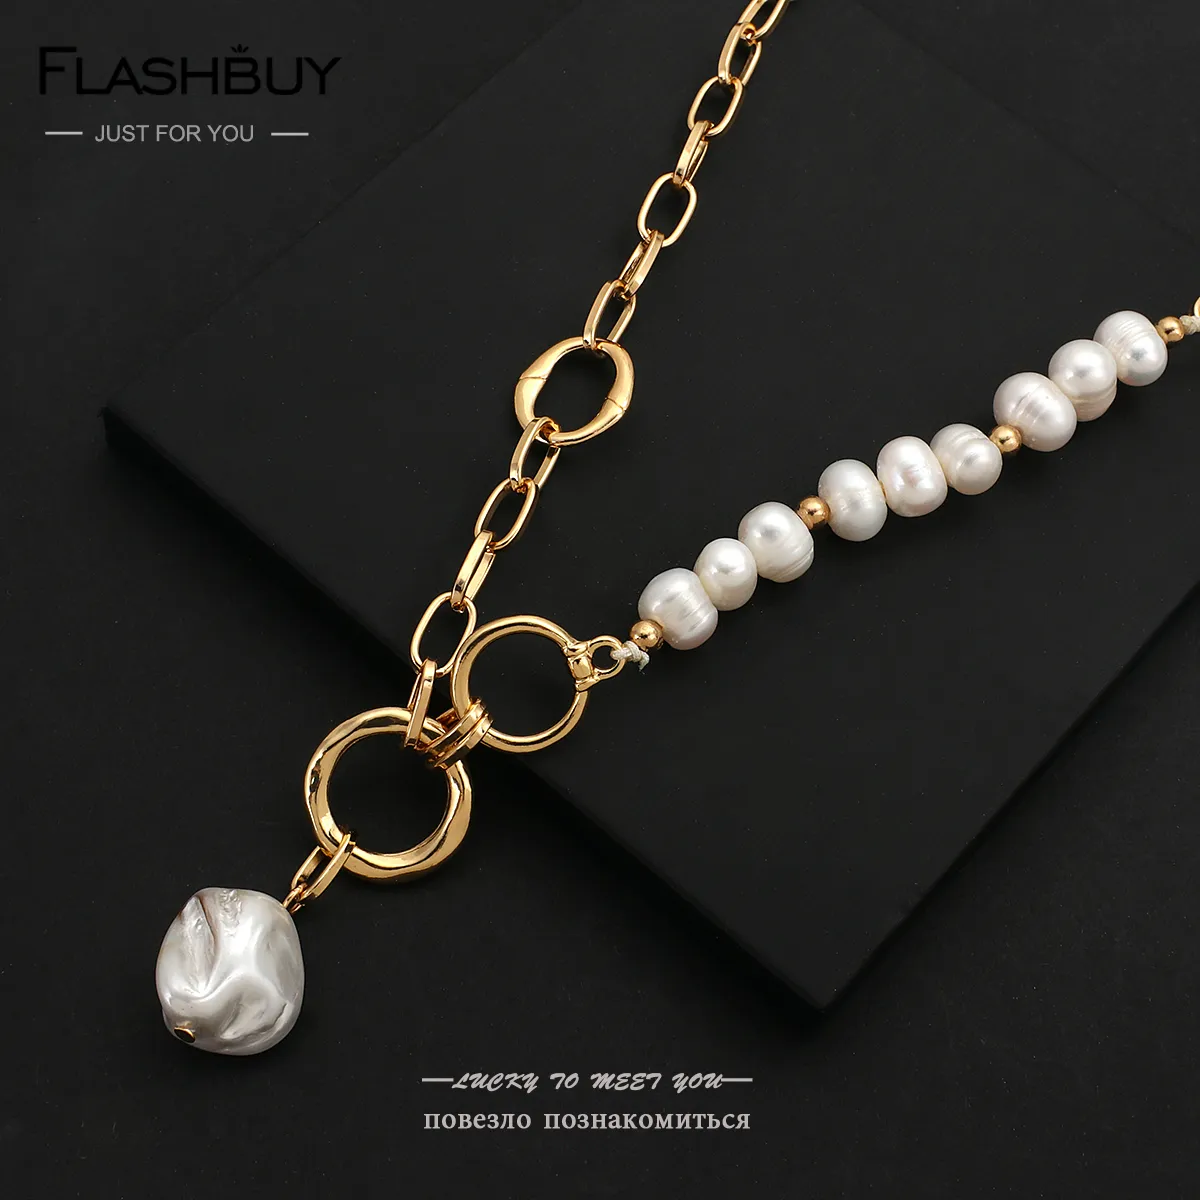 Flashbuy – colliers avec pendentif en perles d'eau douce naturelles irrégulières pour femmes, chaîne épaisse, cercles, collier de perles baroques élégant